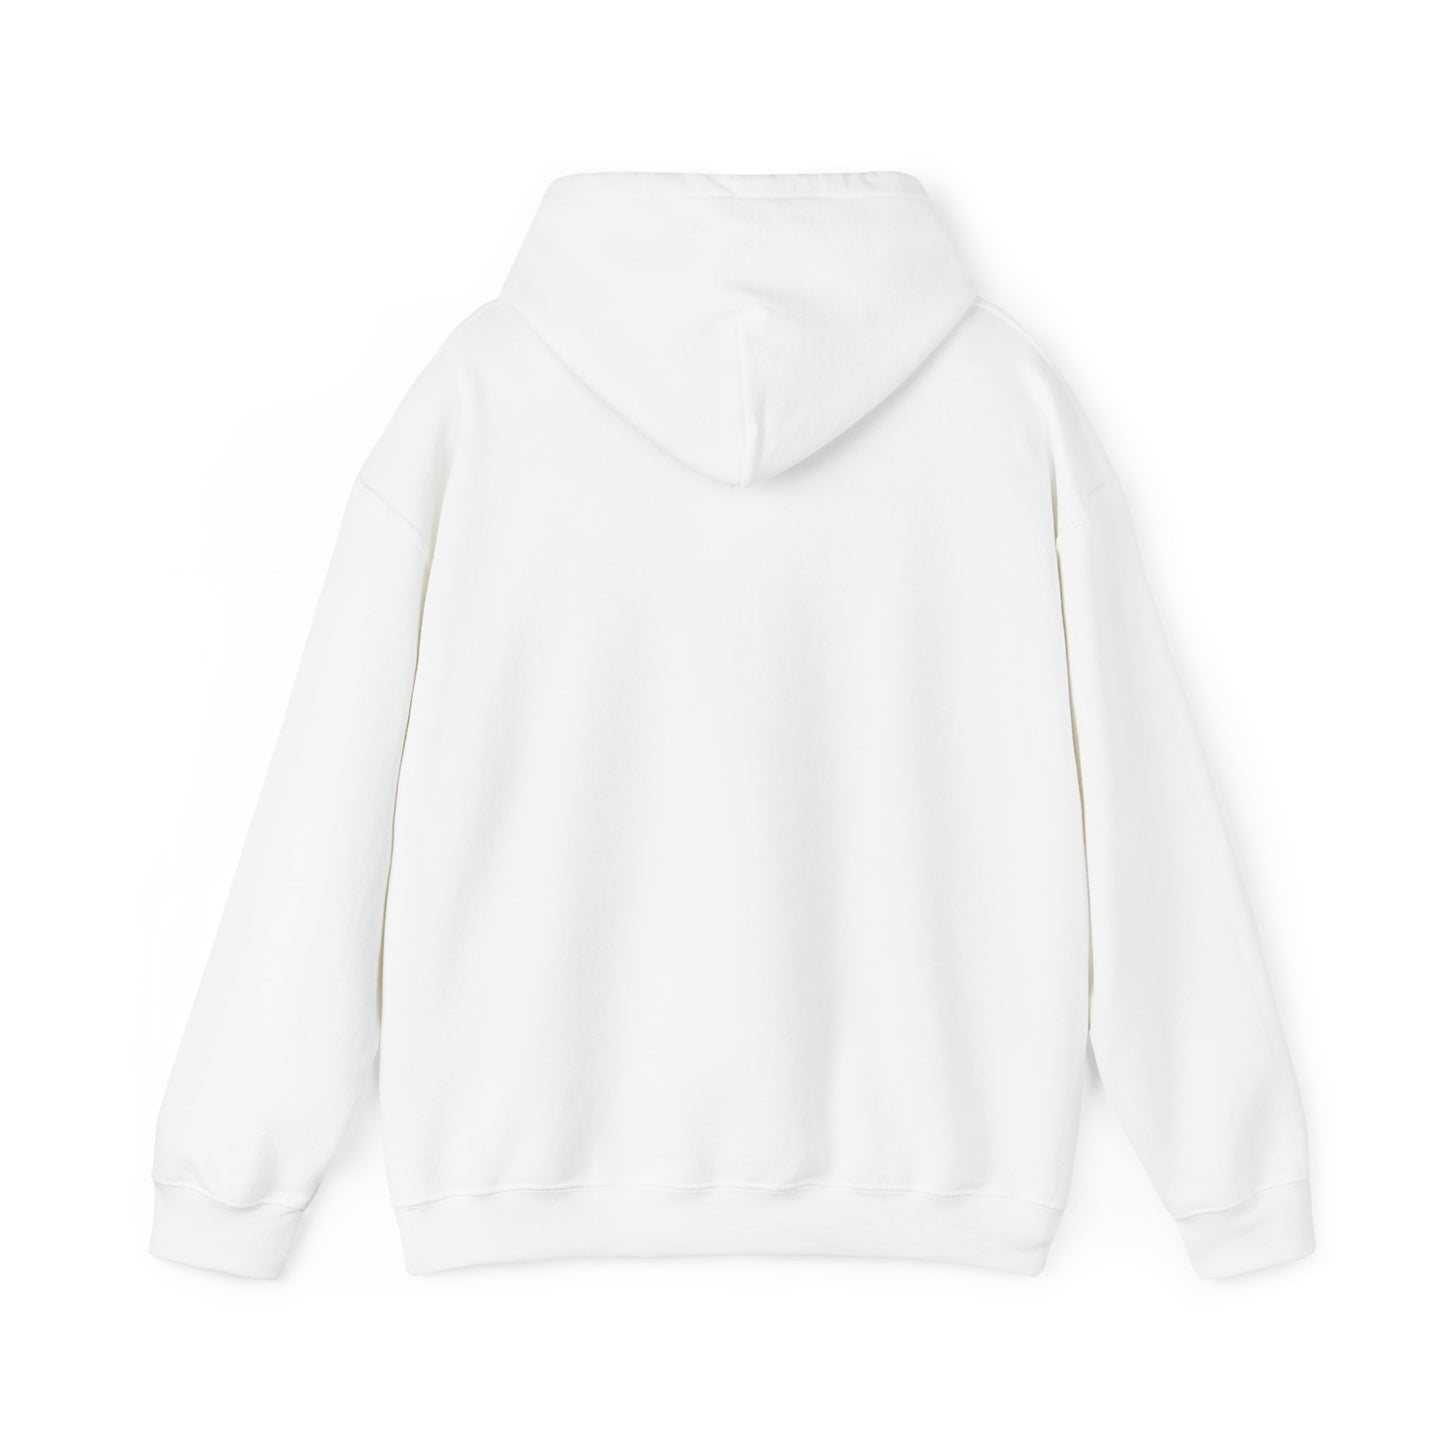 A Kiss in the Sky Unisex Heavy Blend™ Hooded Sweatshirt